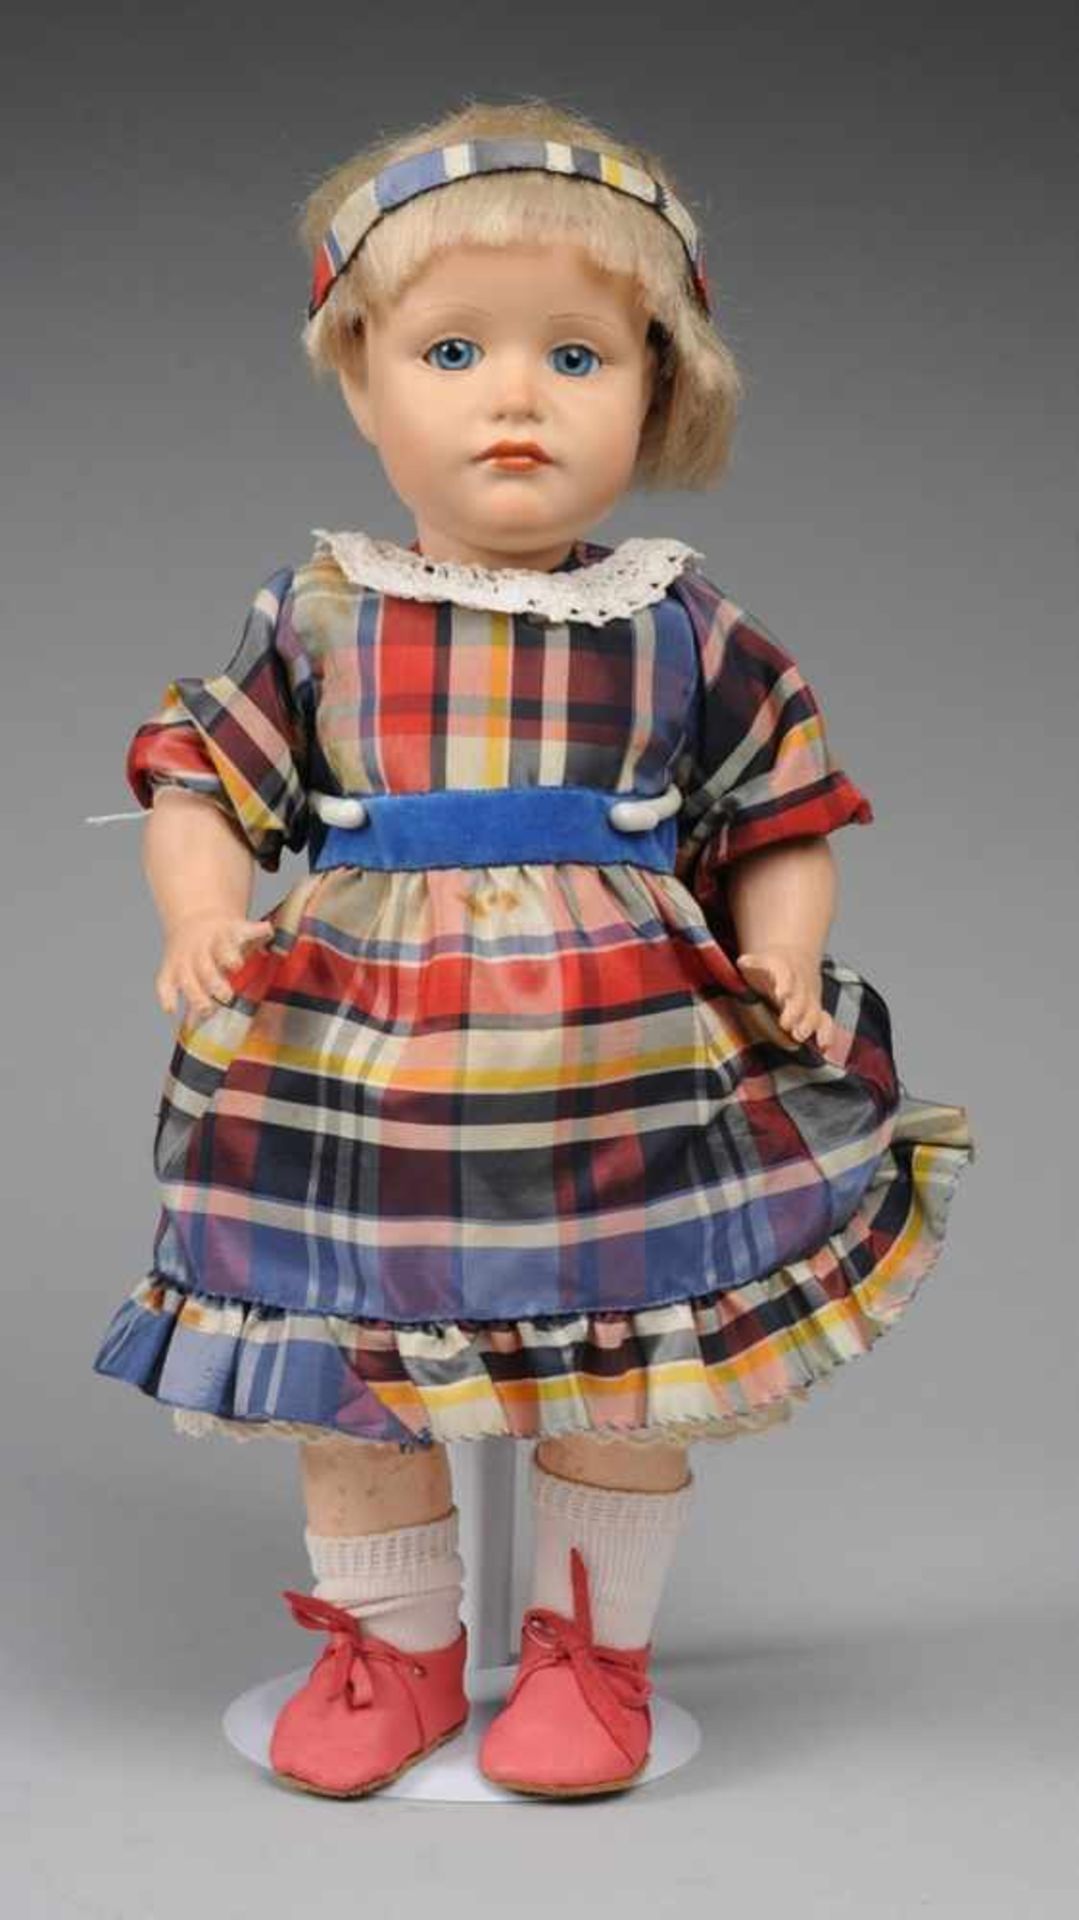 Replik-Puppenmädchen "Gretchen" Modell 114 mit l. schmollendem Gesichtsausdruck. Kurbelkopf aus